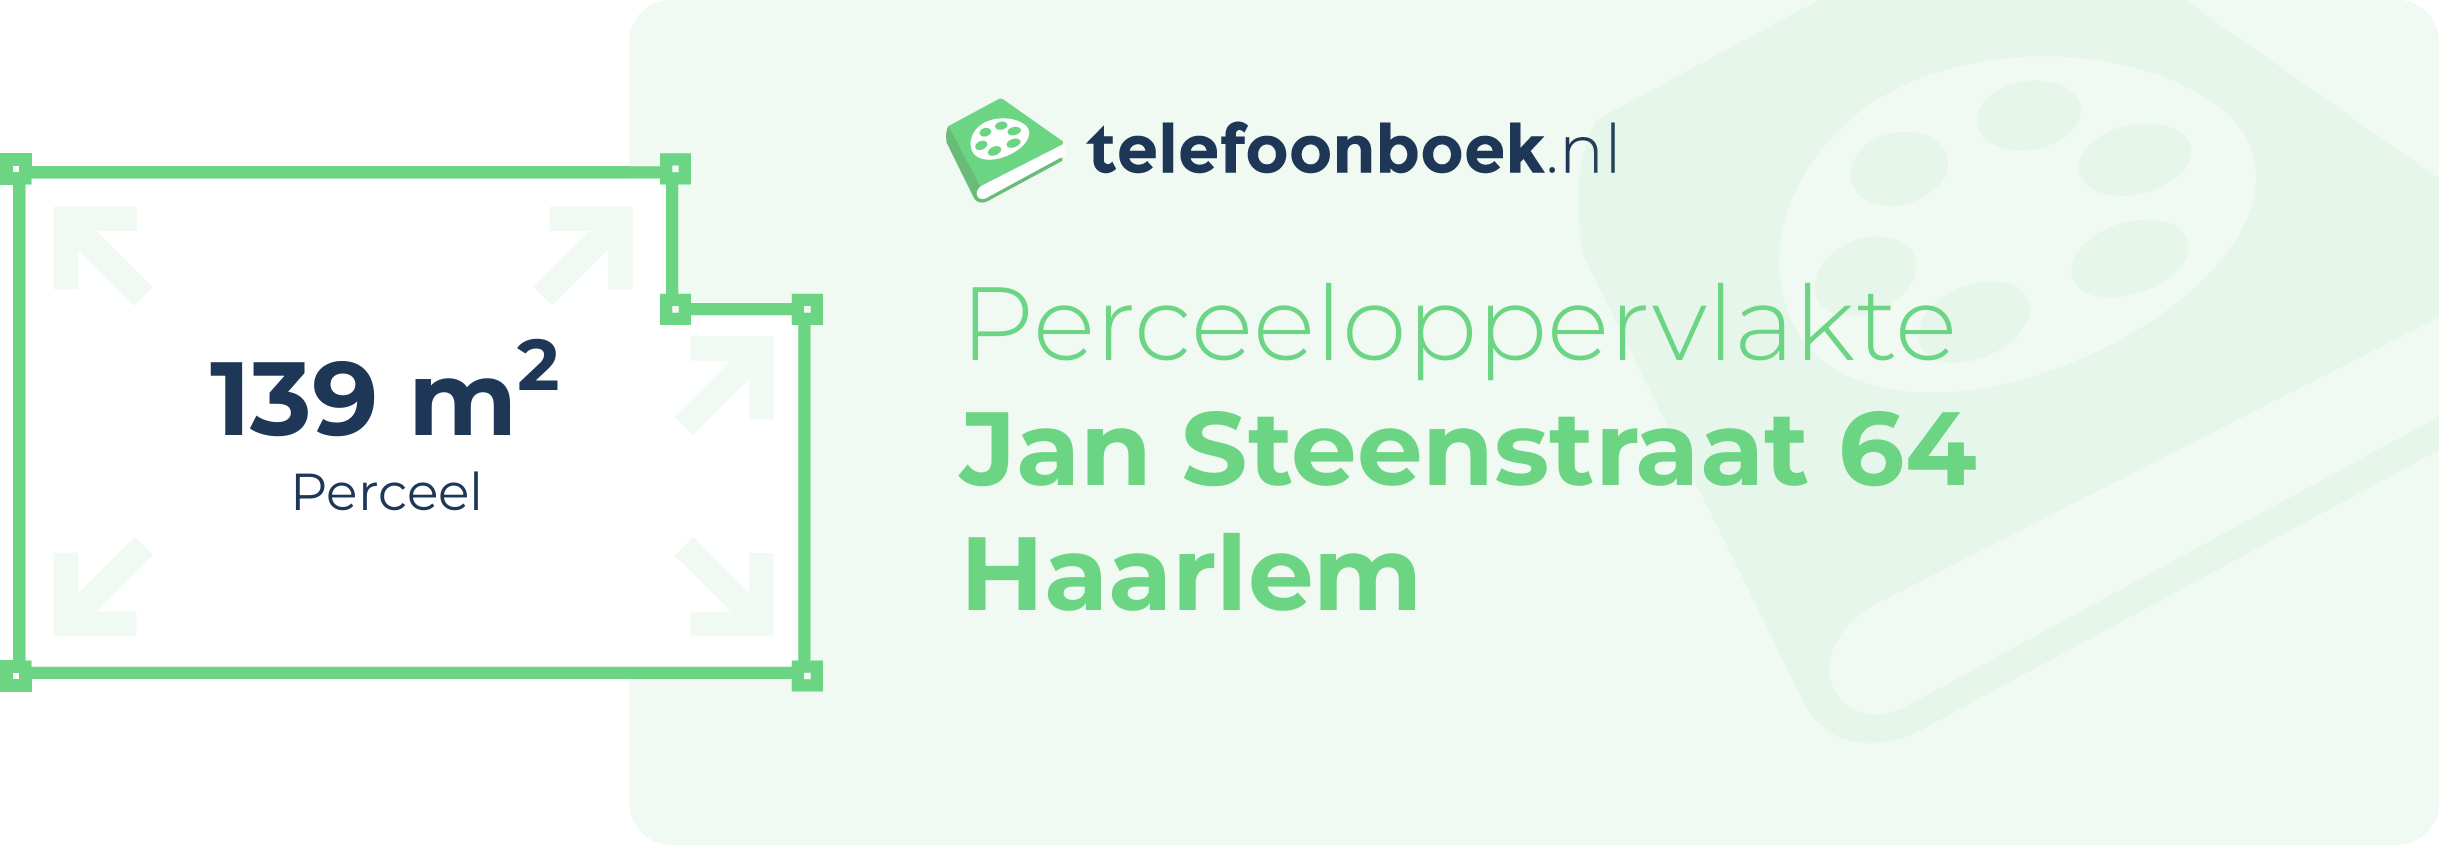 Perceeloppervlakte Jan Steenstraat 64 Haarlem